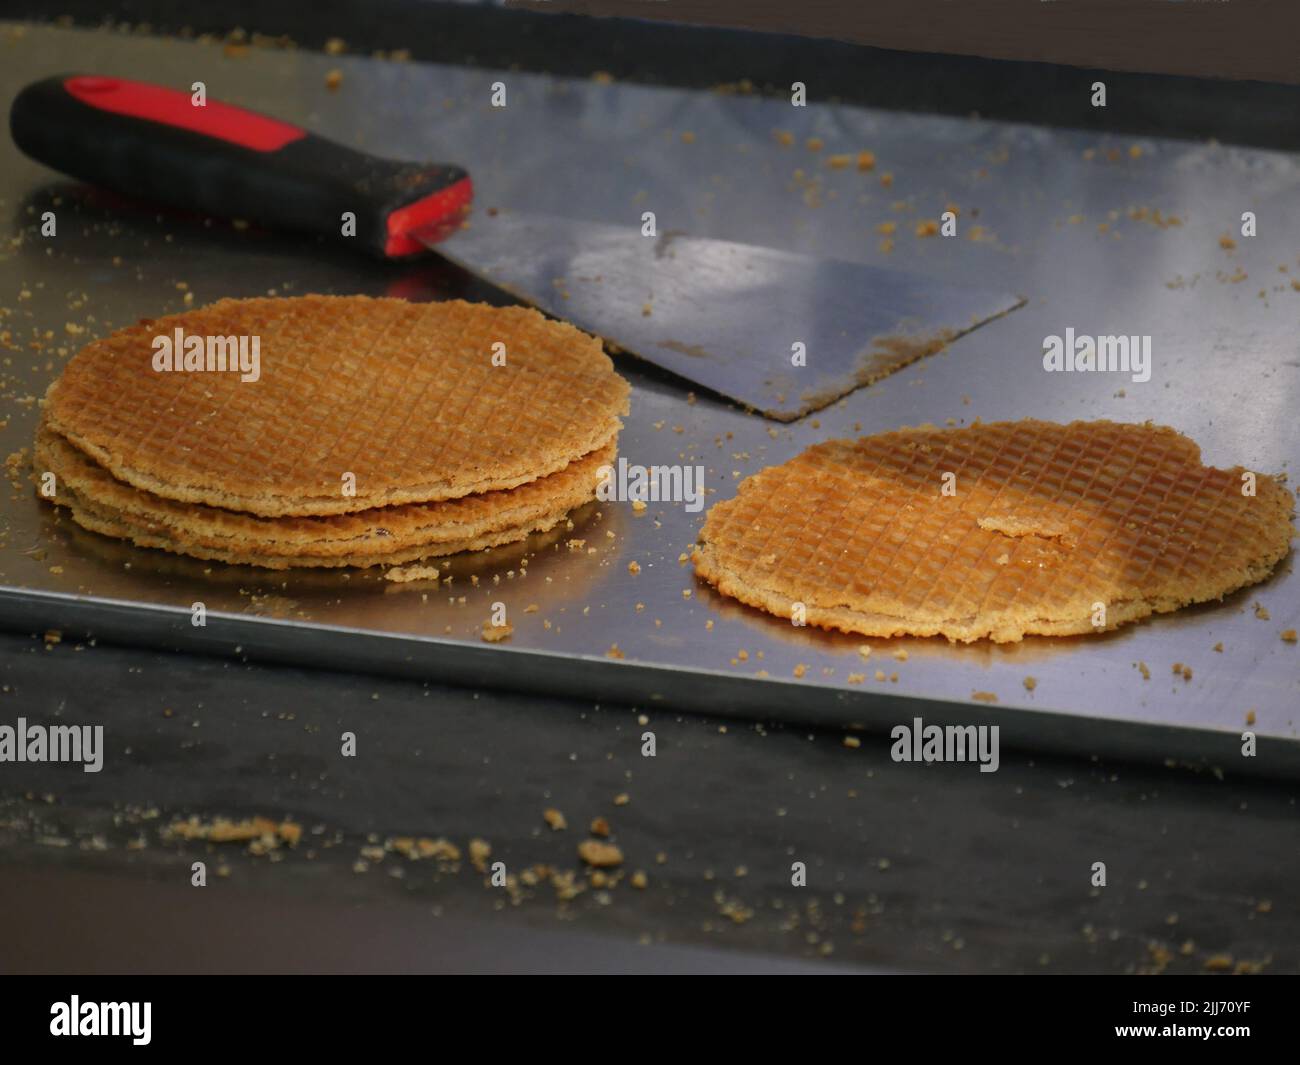 Sfoglia con le briciole di pasta, i waffle Stroop appena sfornati, in stile olandese, sullo sfondo sfocato un lifter per sollevare i waffle Foto Stock